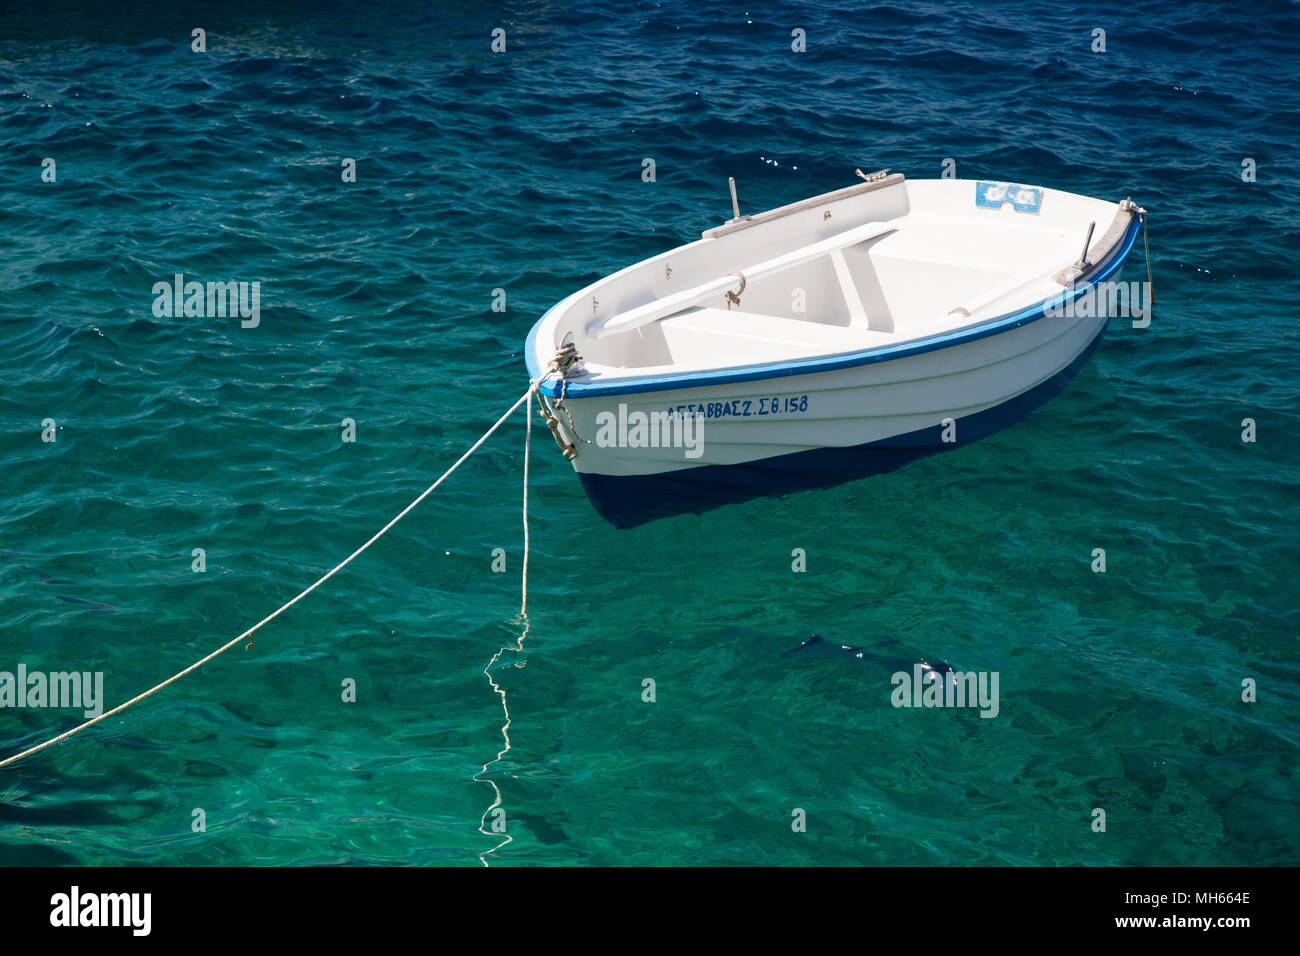 Petit bateau de pêche grec flottant dans l'eau turquoise Banque D'Images